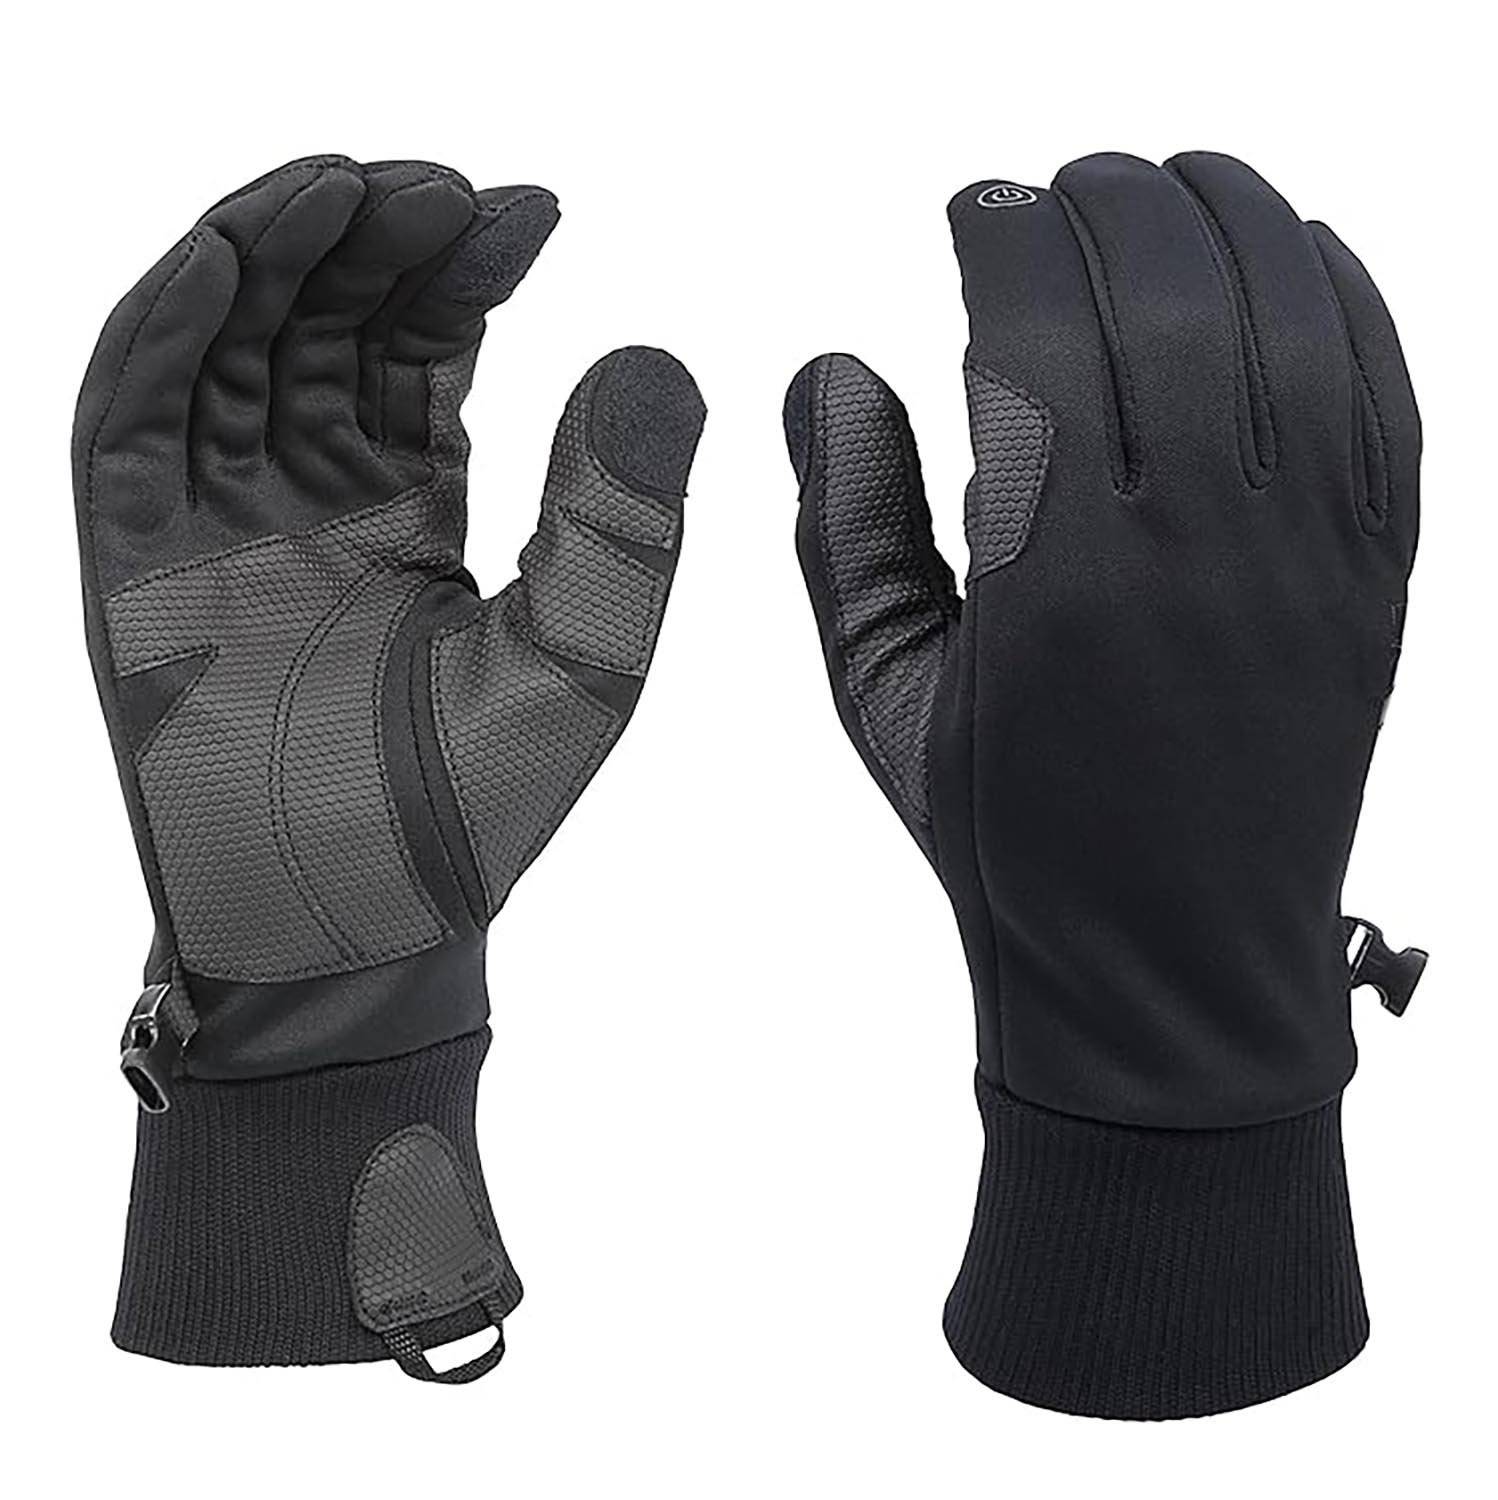 HWI Gear Winter Waterproof Touchscreen Gloves, Black